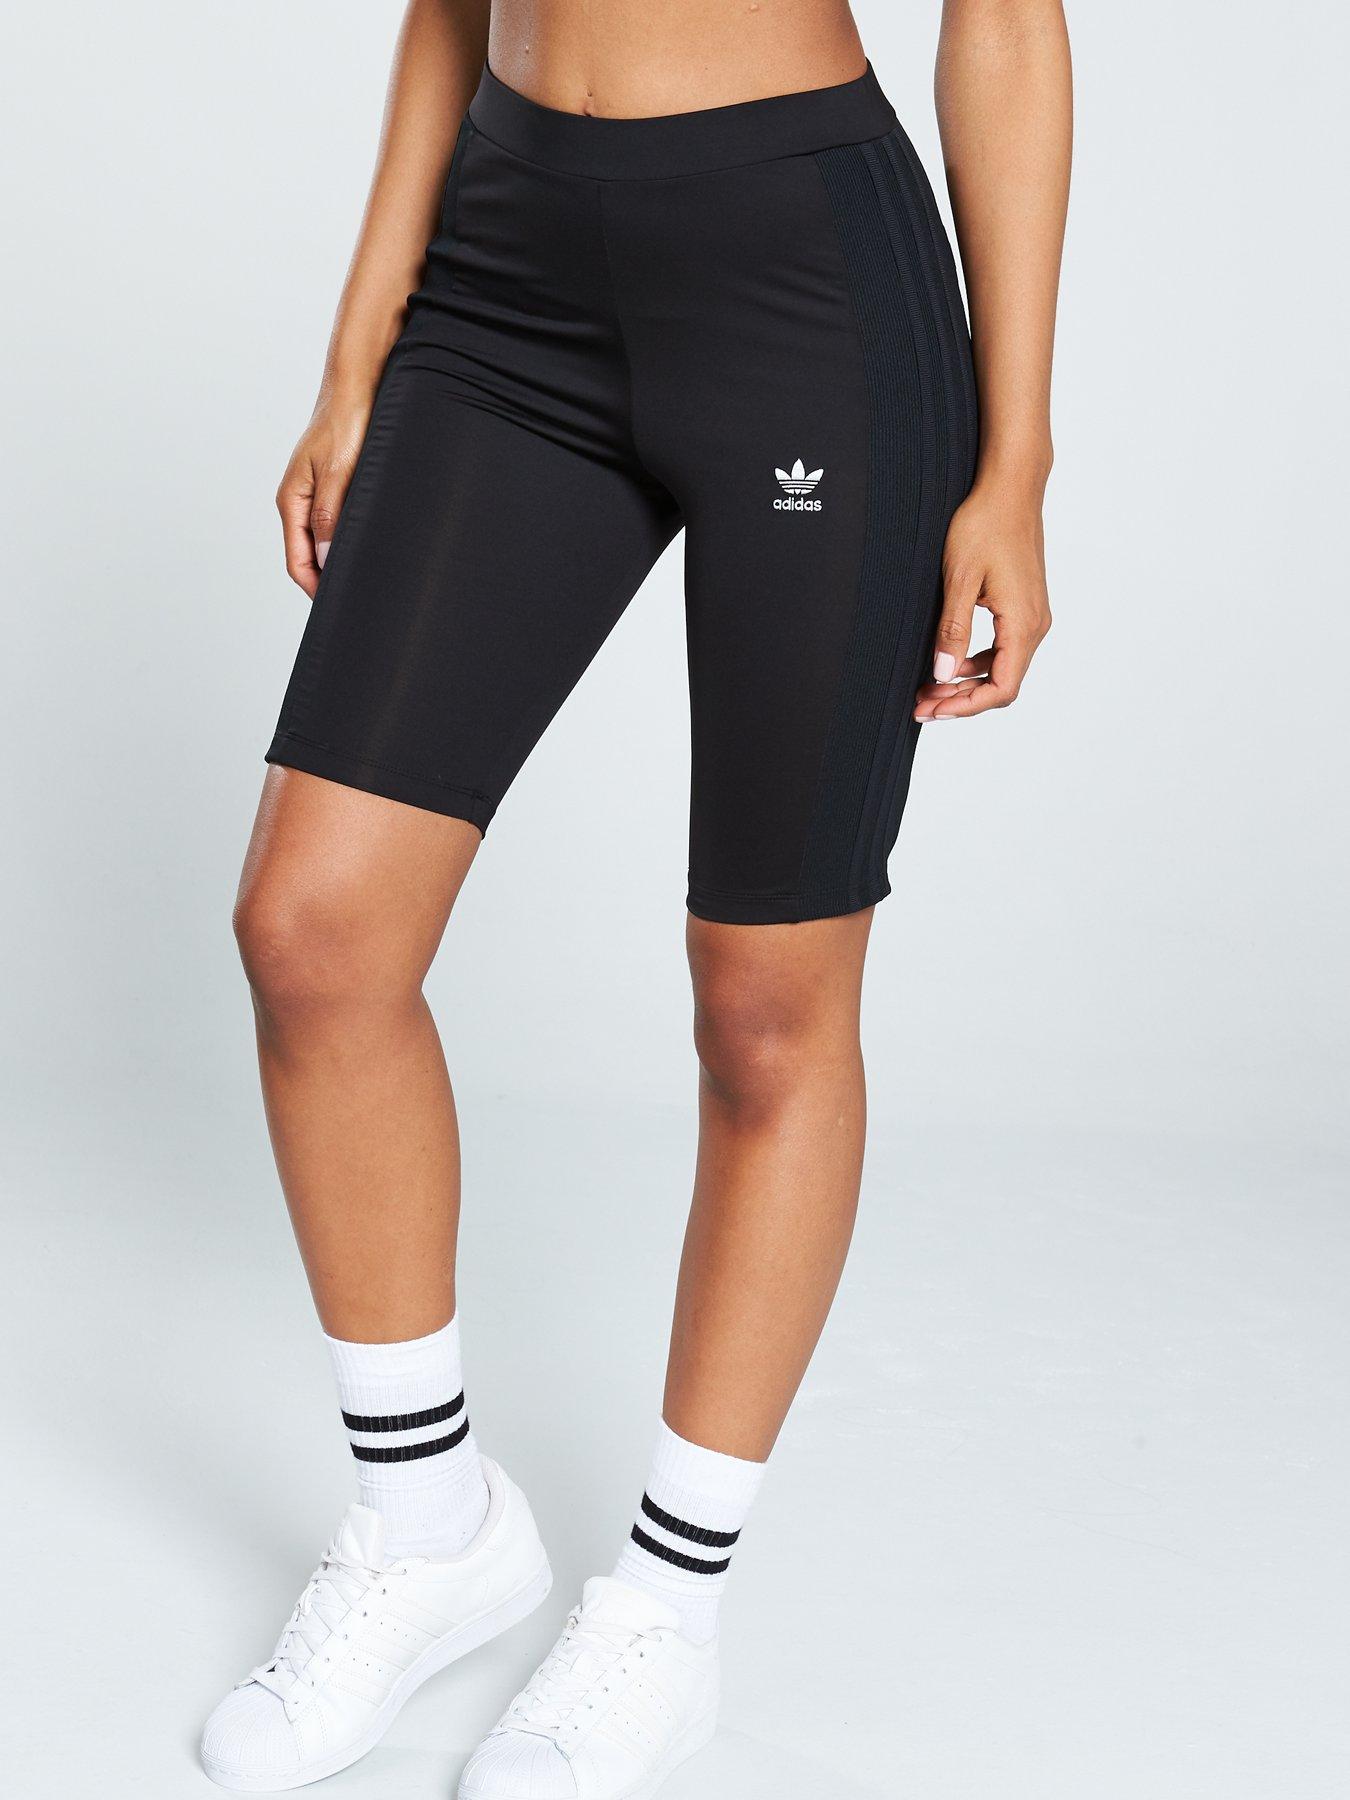 adidas cycling shorts